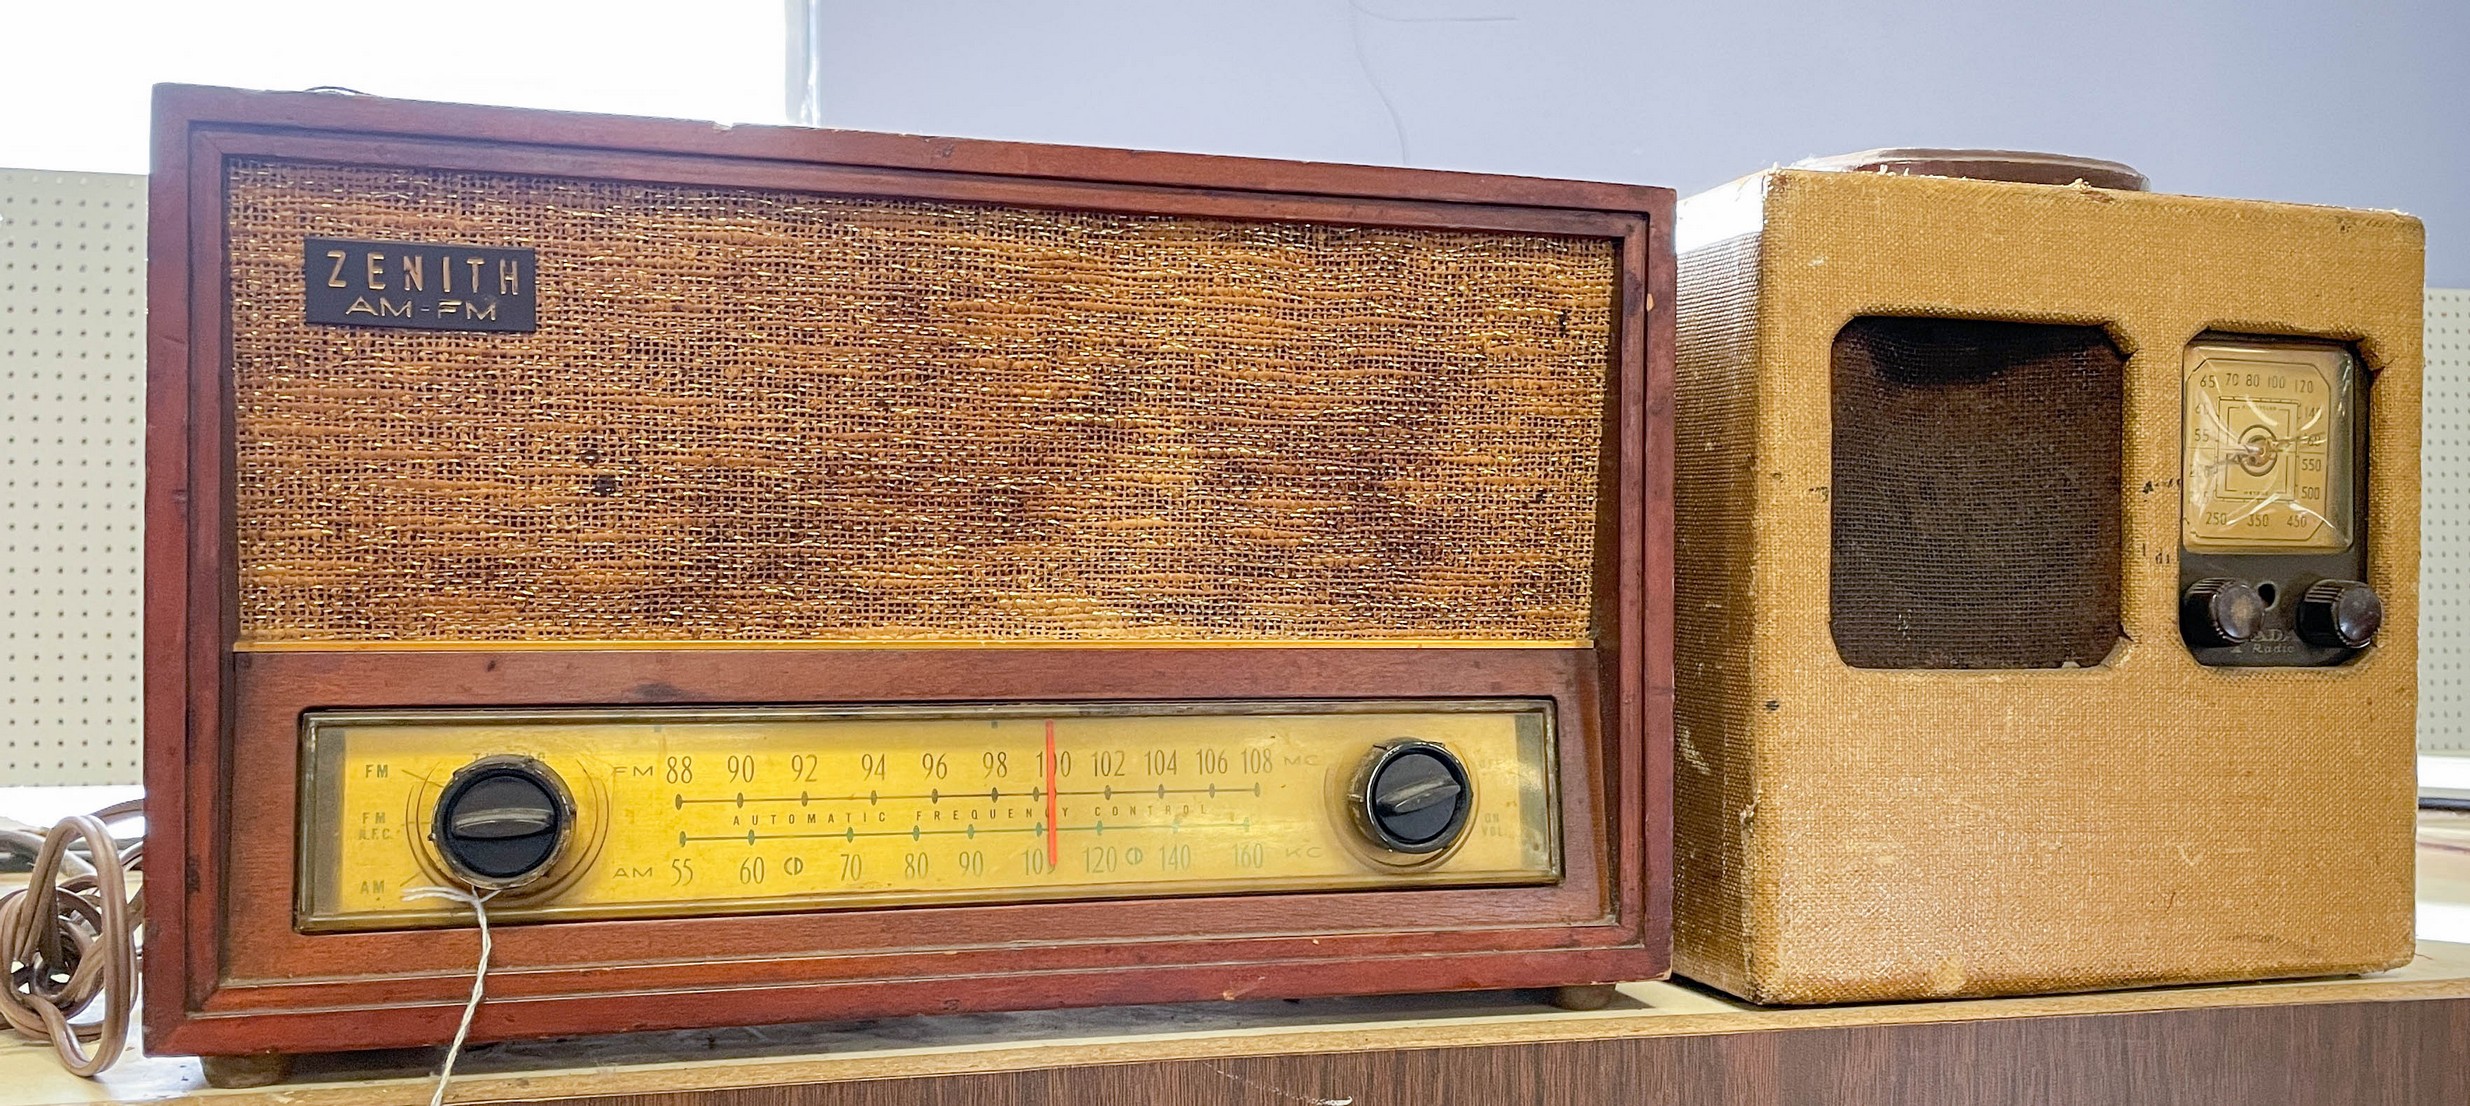 (2) Vintage radios, c/o Fada portable